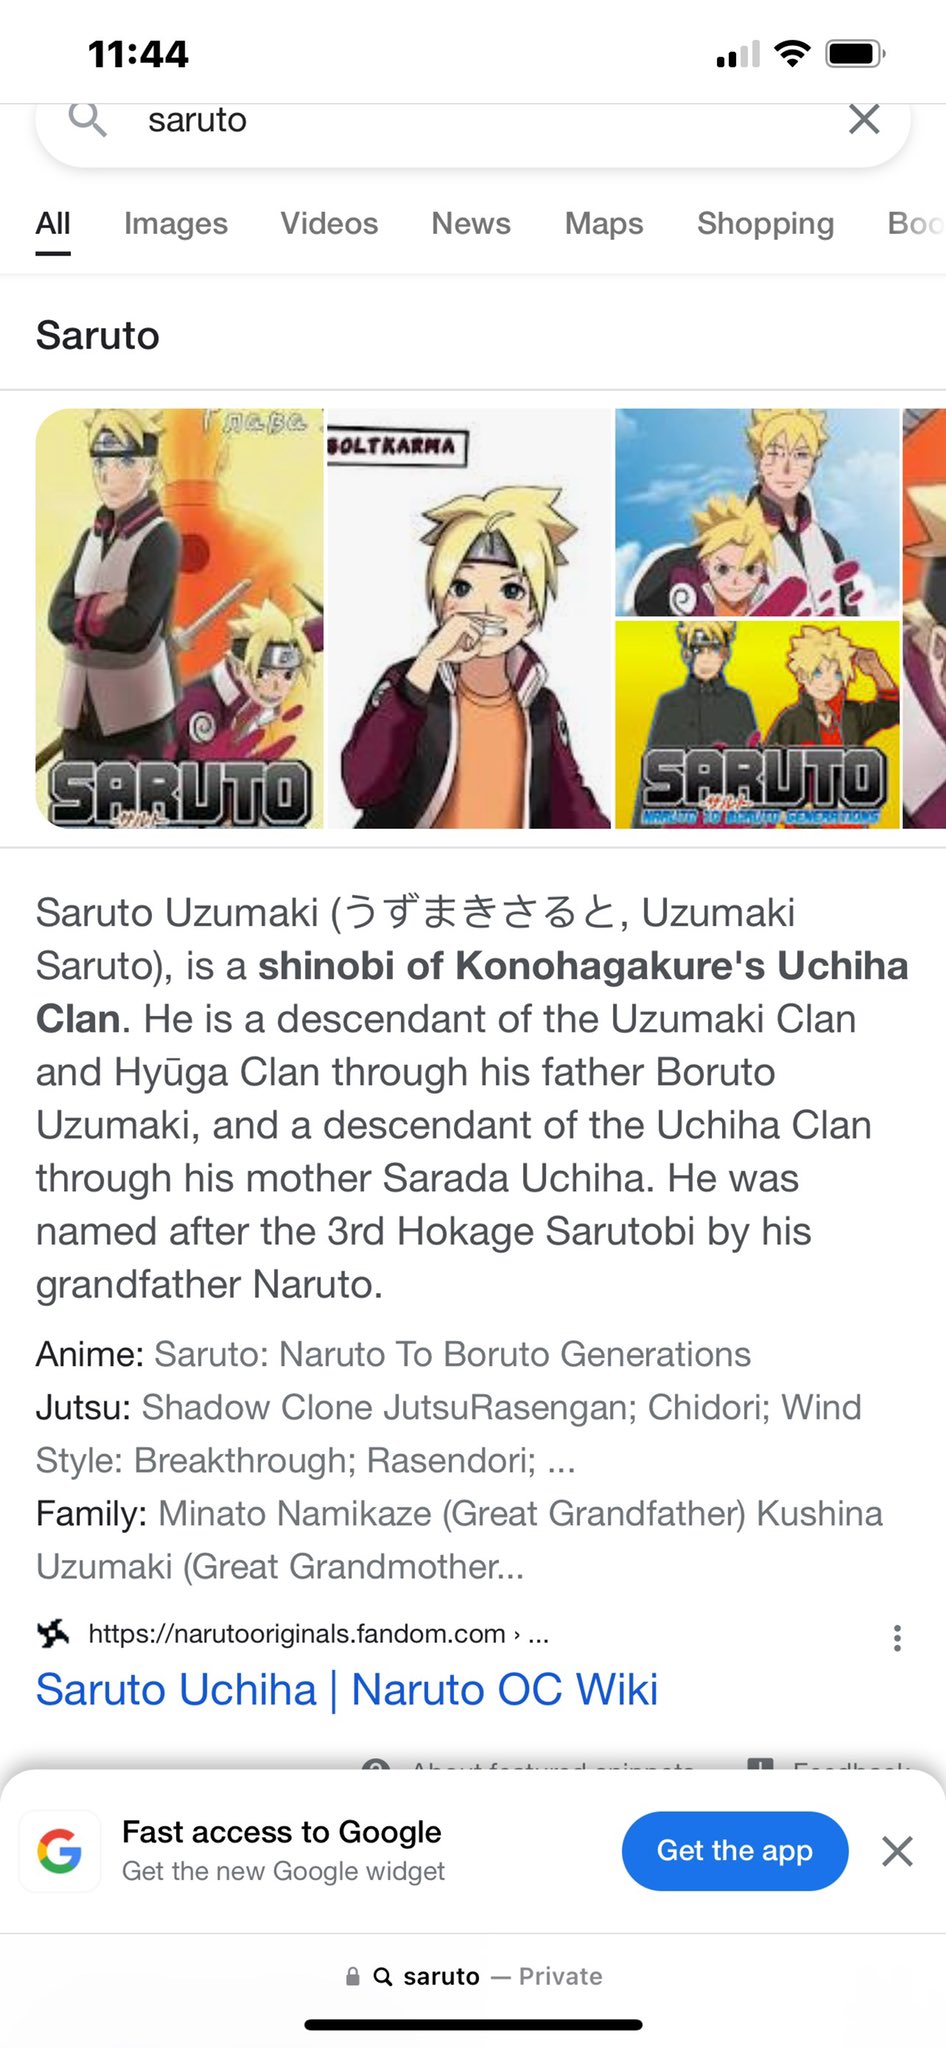 Saruto Uchiha, Naruto OC Wiki